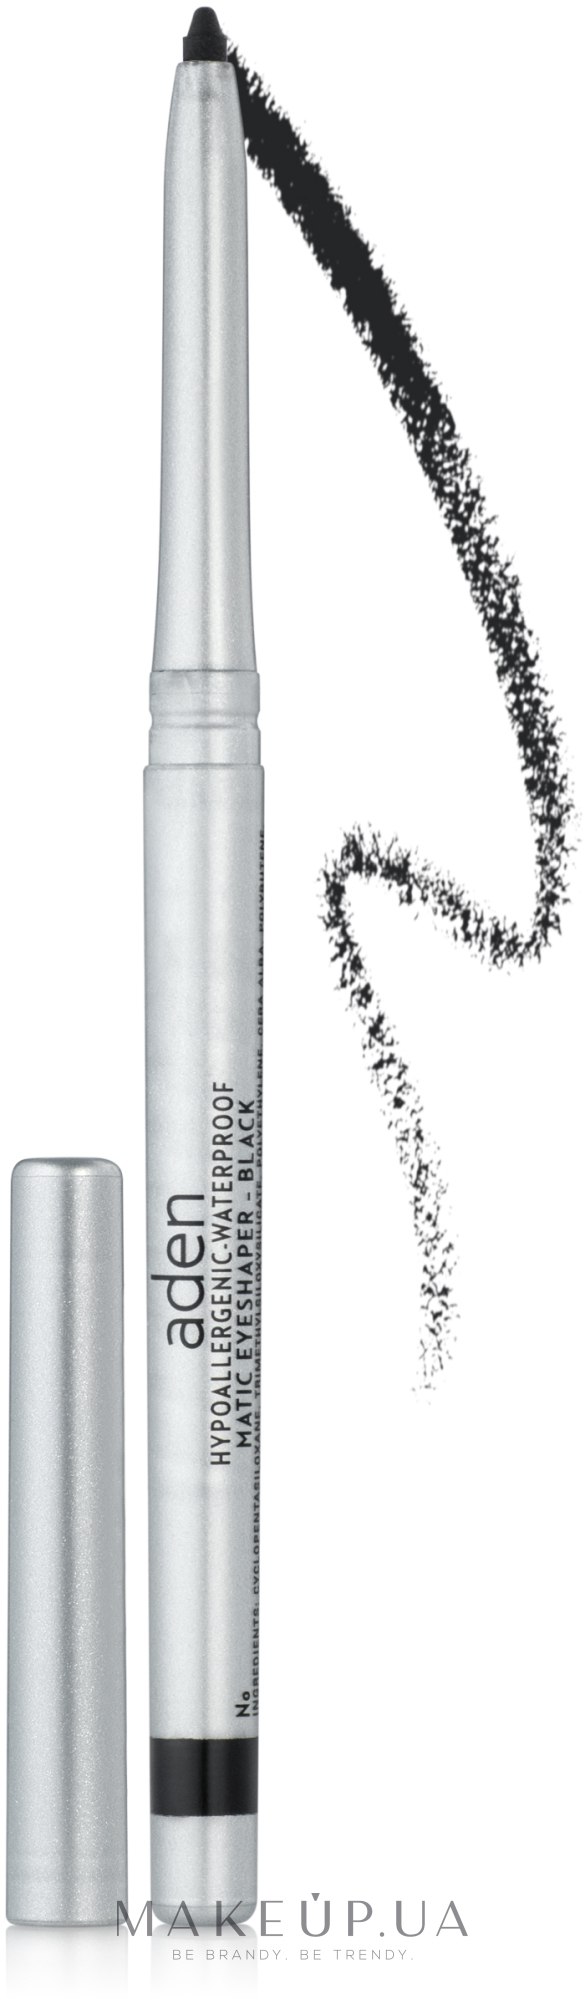 Автоматический карандаш для глаз - Aden Cosmetics Eyeliner Pencil — фото 01 - Black